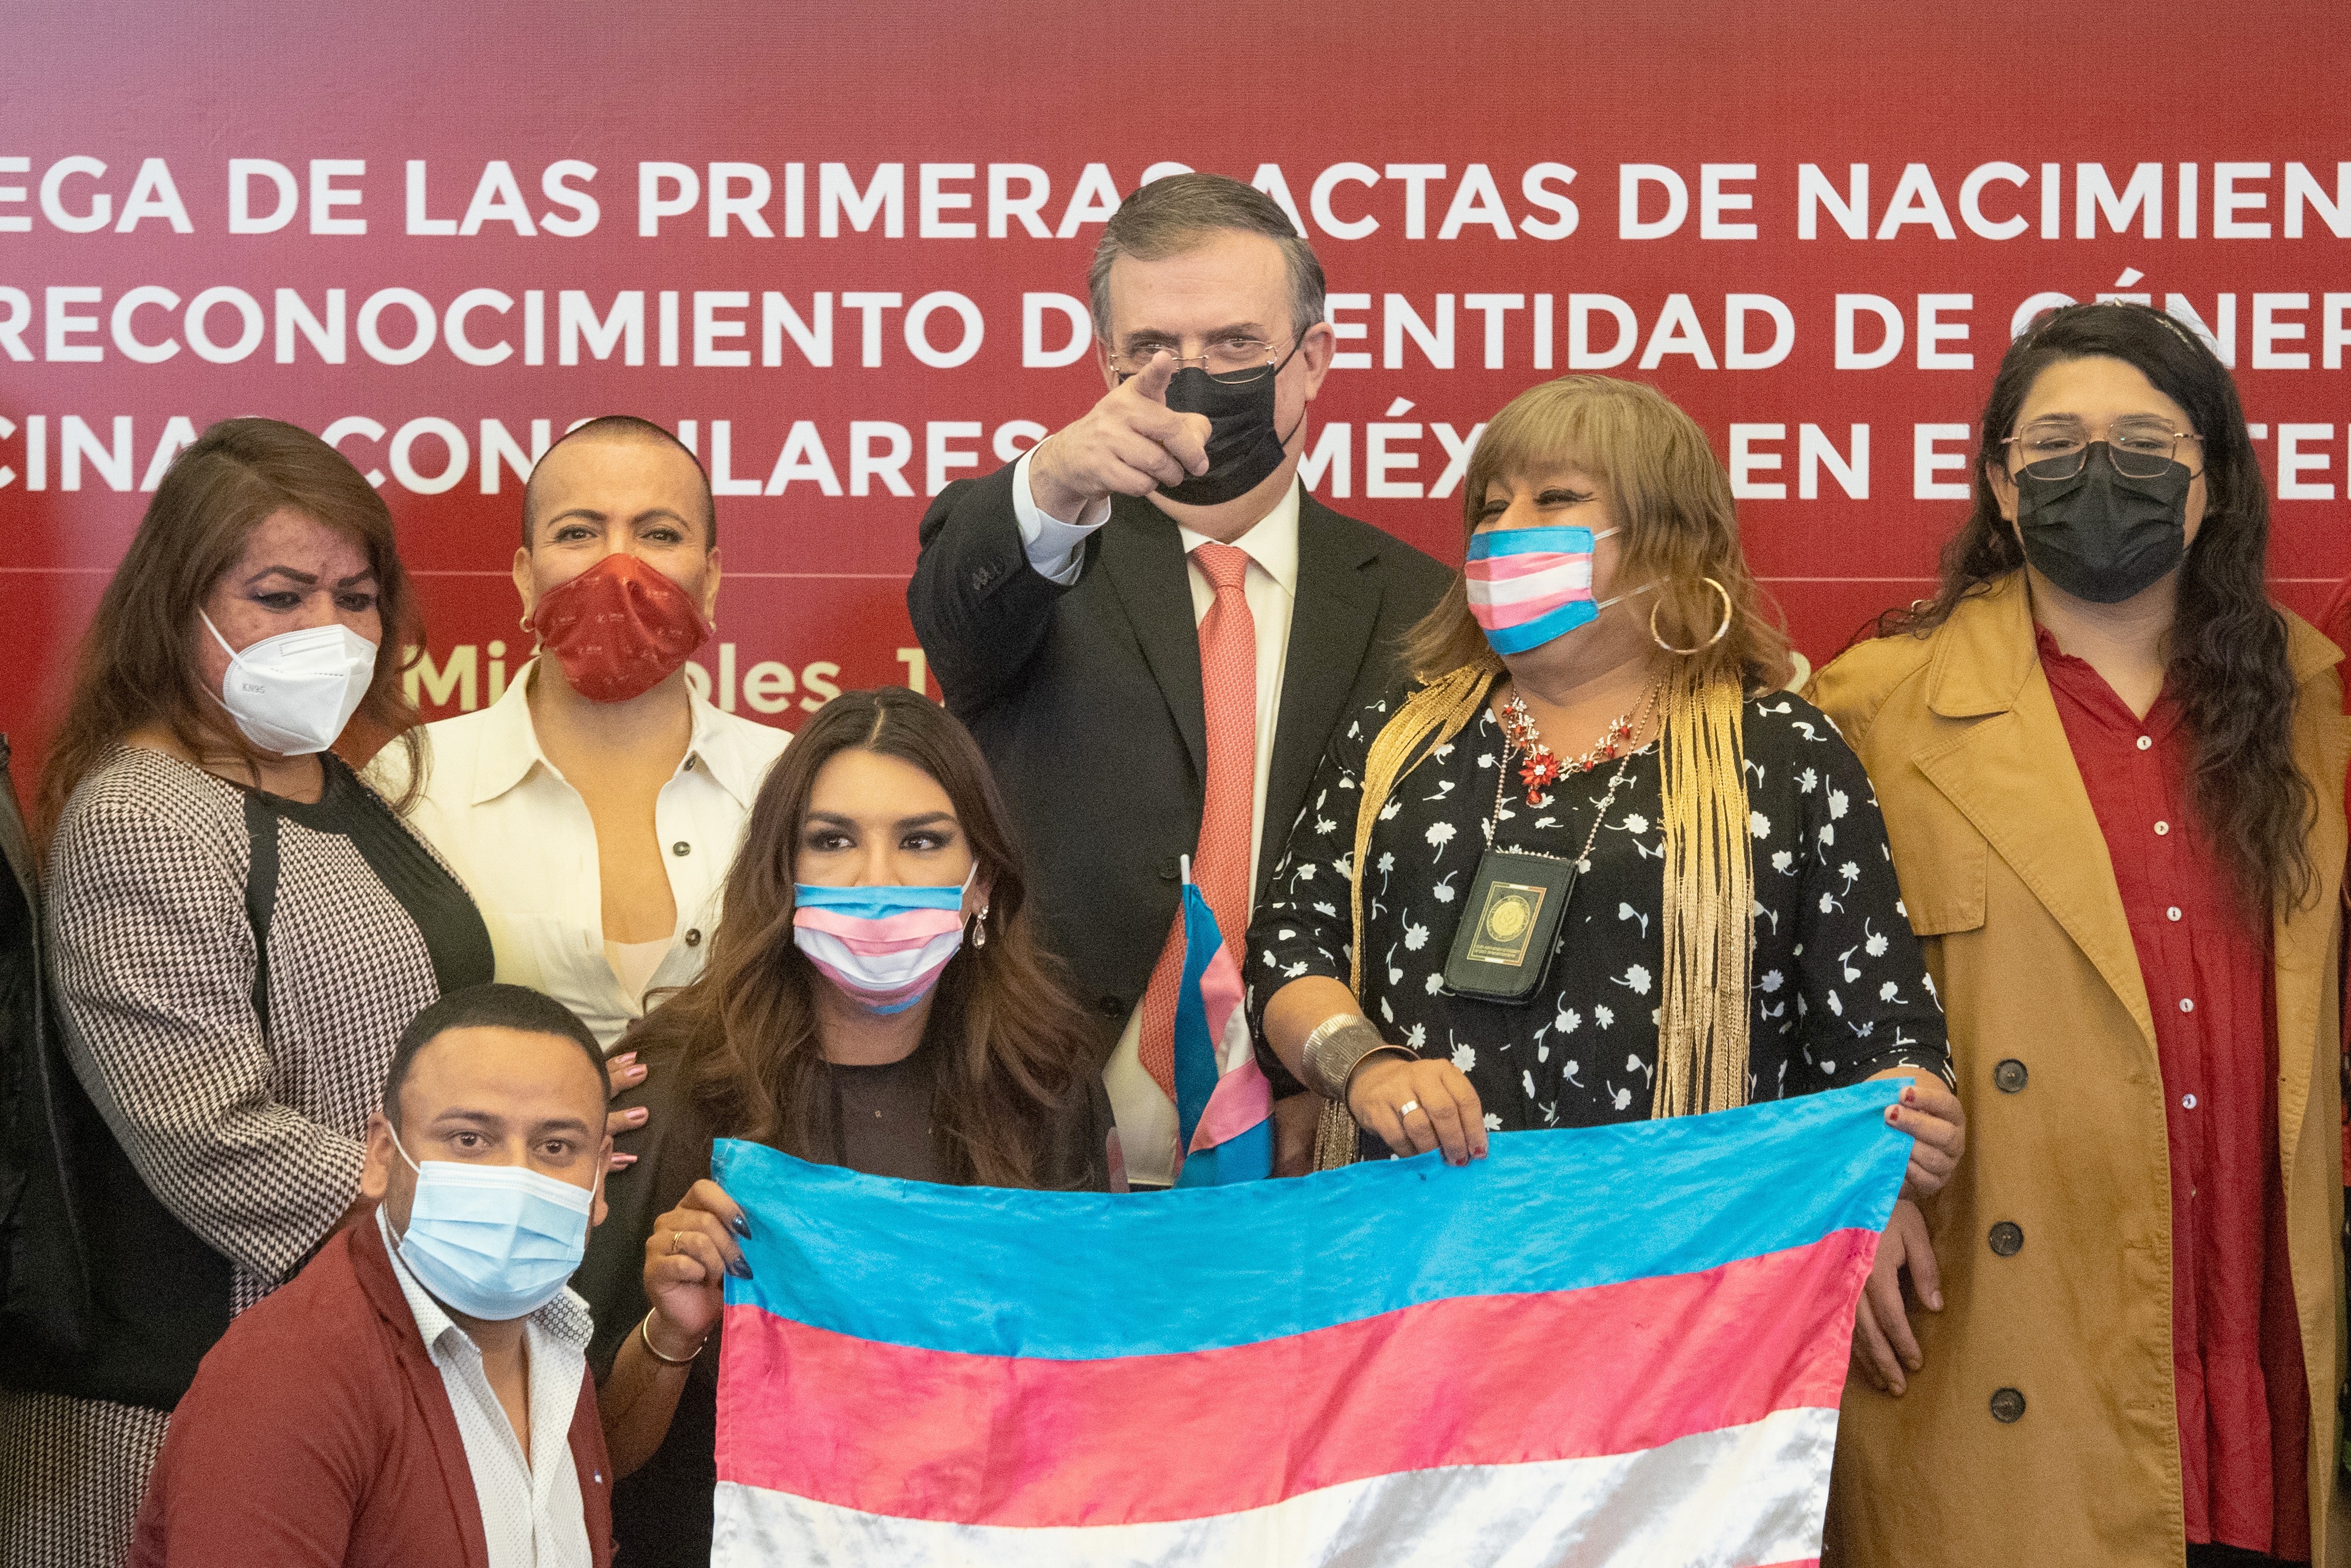 El canciller mexicano Marcelo Ebrard junto a activistas de la comunidad LGBT+, durante la entrega de las primeras actas de nacimiento de identidad de género, en un acto el año pasado (EFE/Isaac Esquivel)
